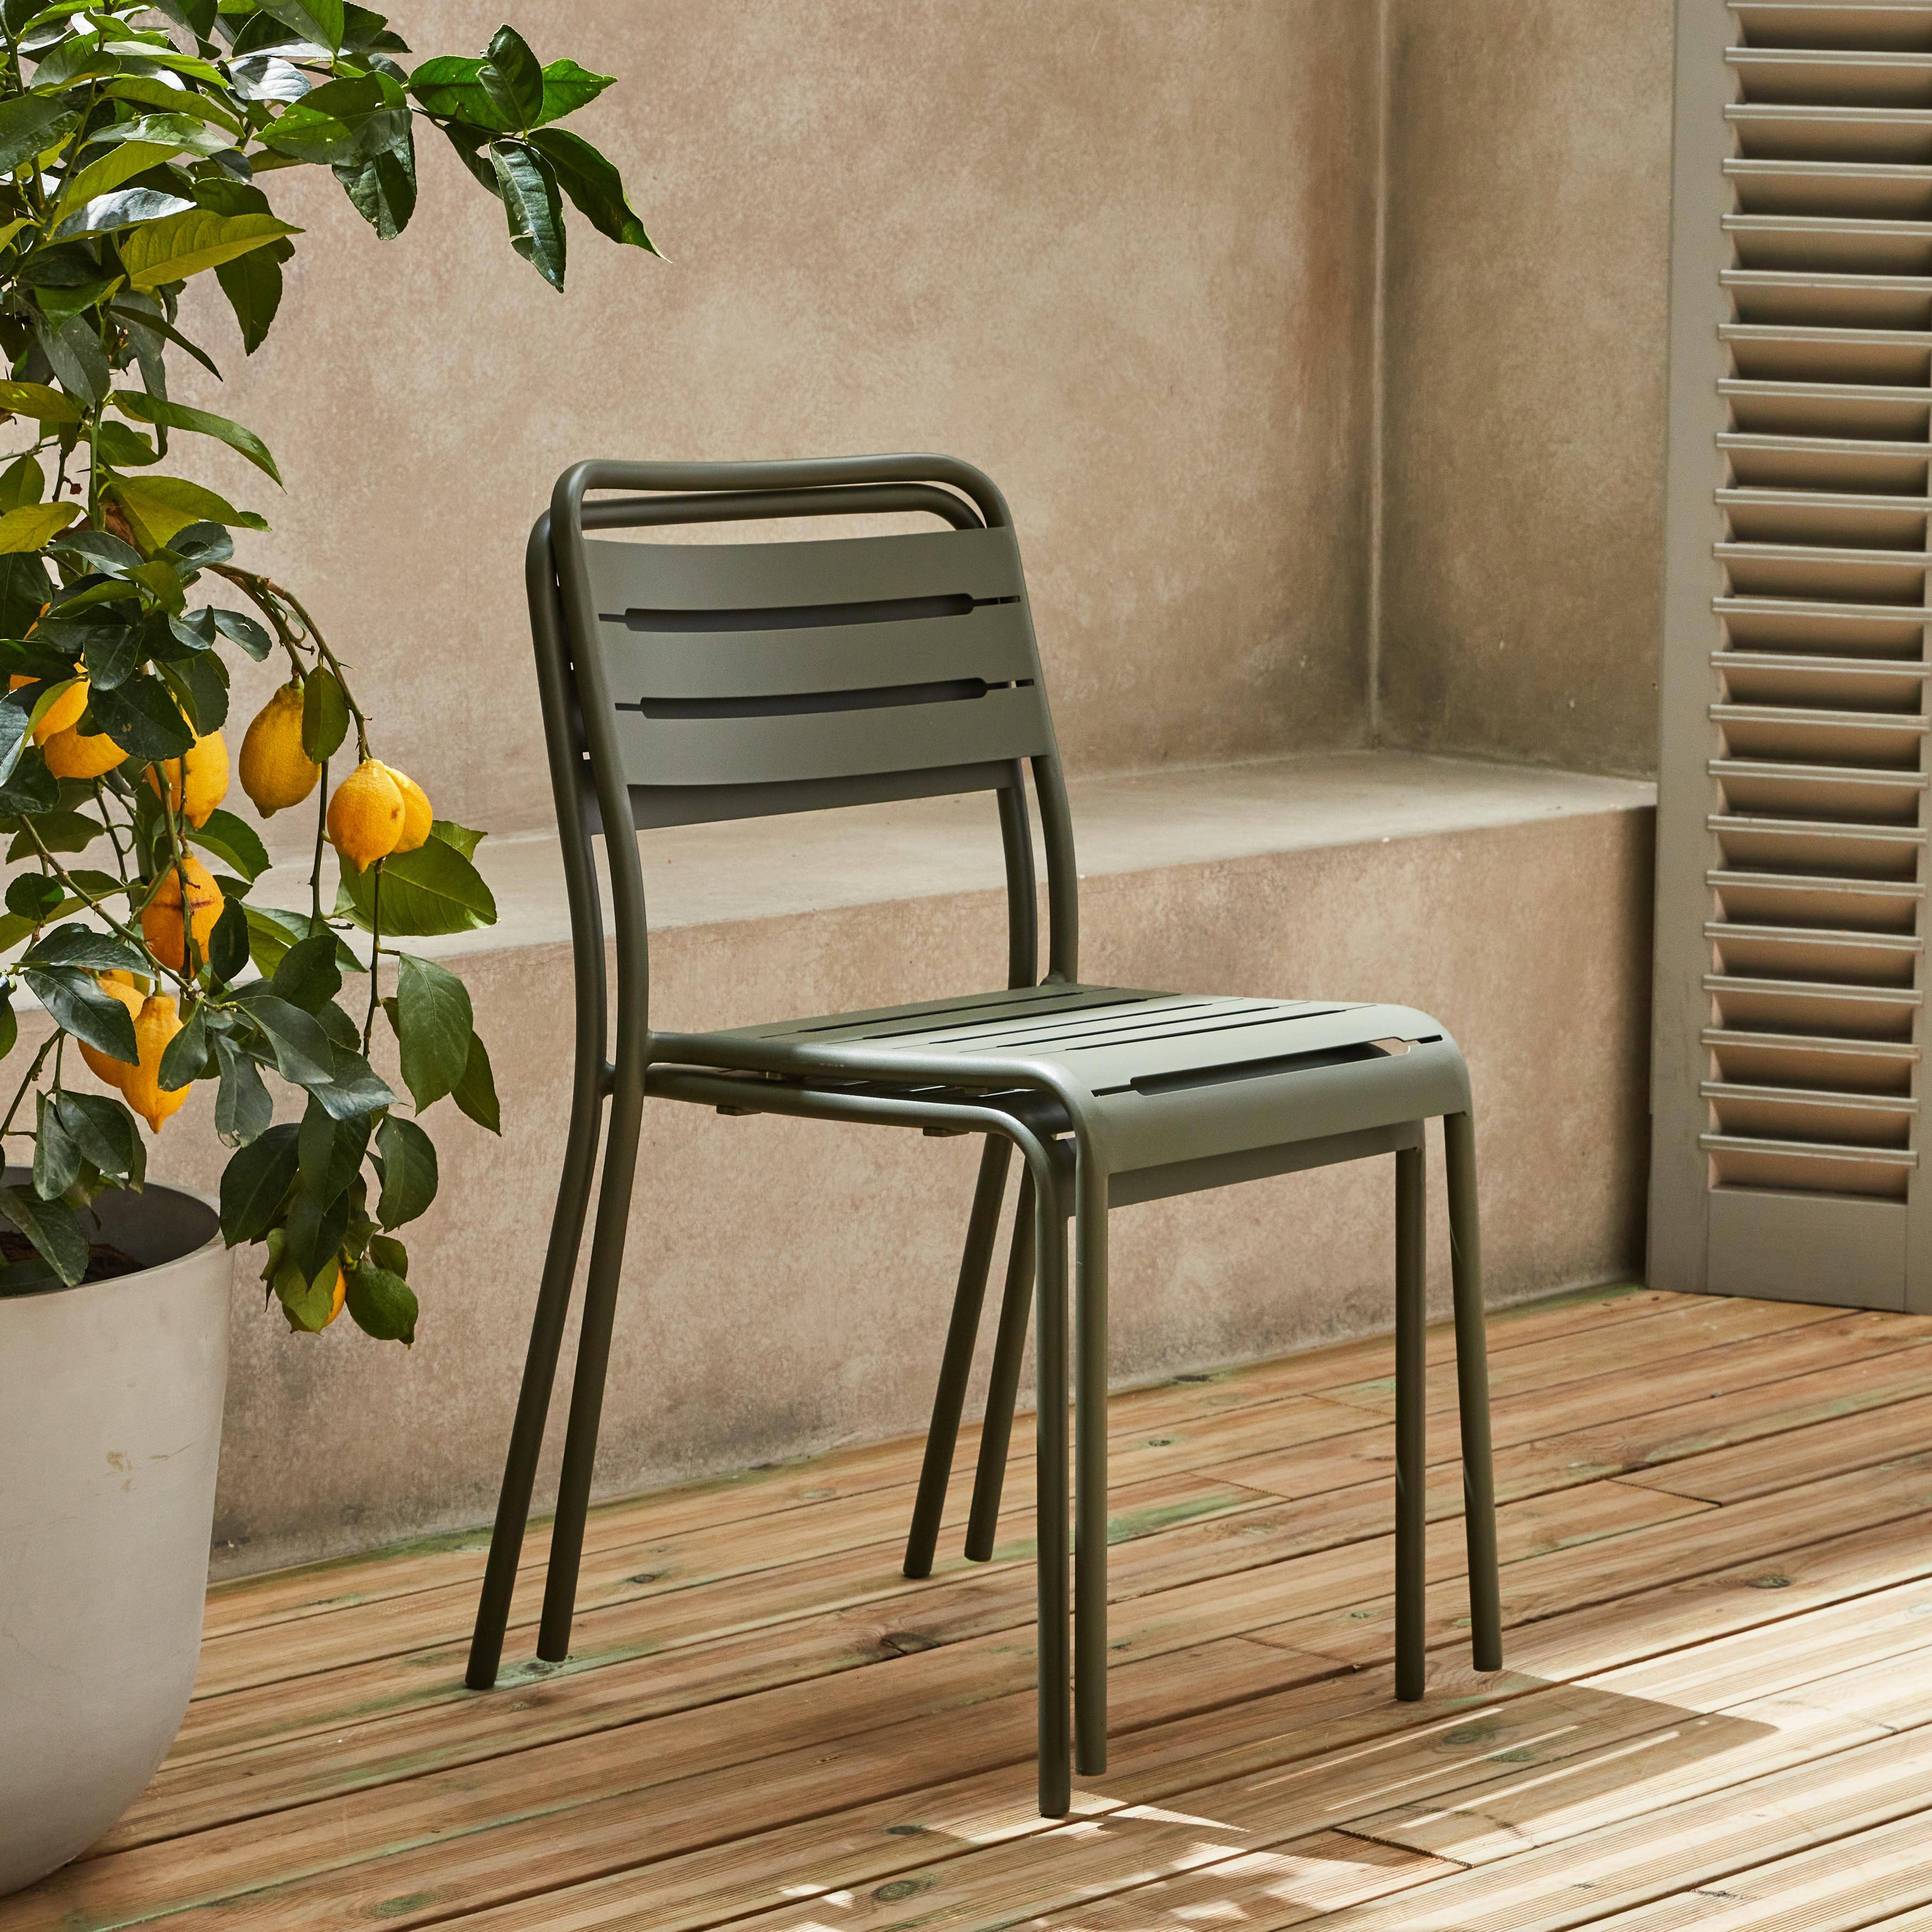 Metall-Gartentisch mit 2 Stühlen, 2 Personen, Amelia Savanne 70 x 70 cm Photo3